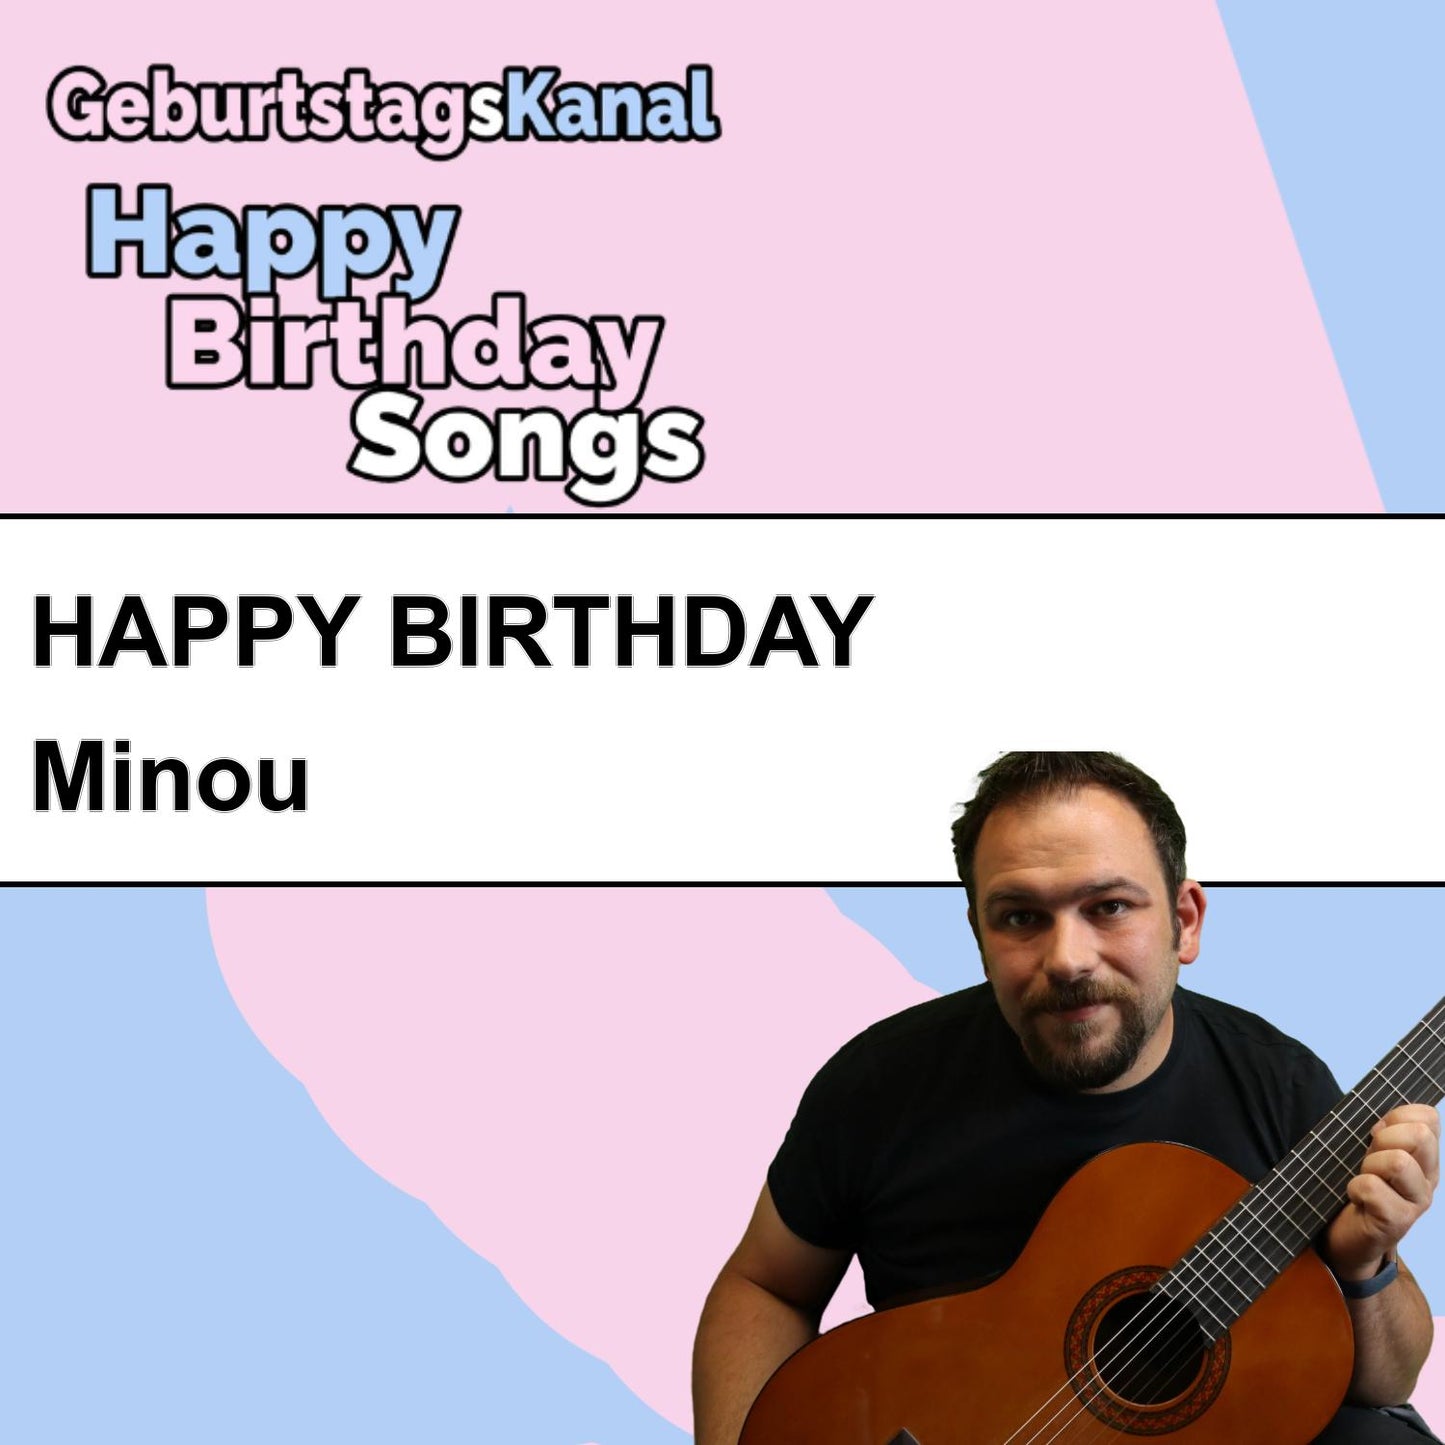 Produktbild Happy Birthday to you Minou mit Wunschgrußbotschaft